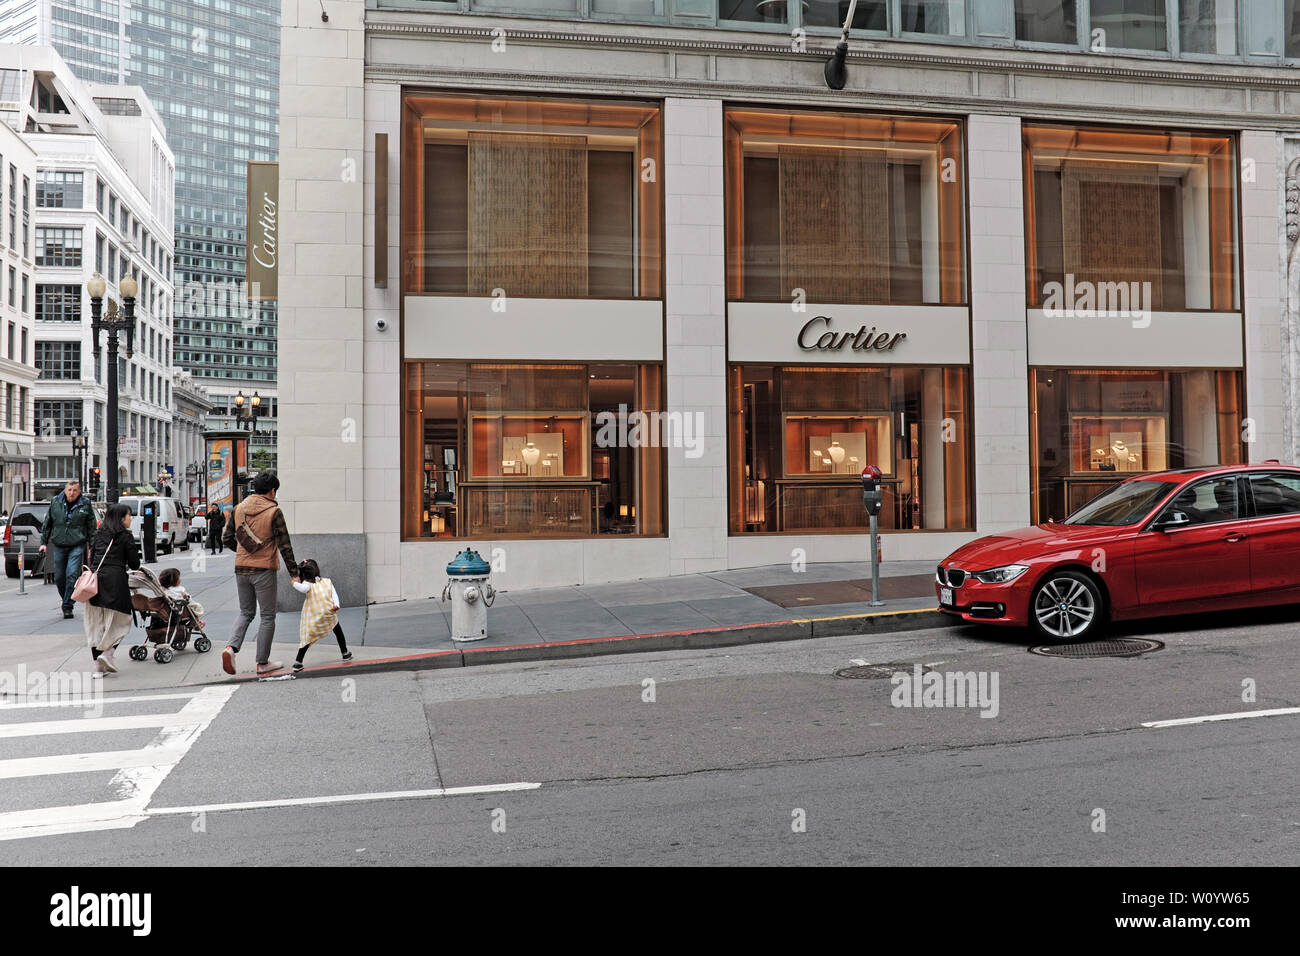 Cartier, el negocio minorista especializado en joyería, en Grant Avenue en San Francisco, California, EEUU. Foto de stock